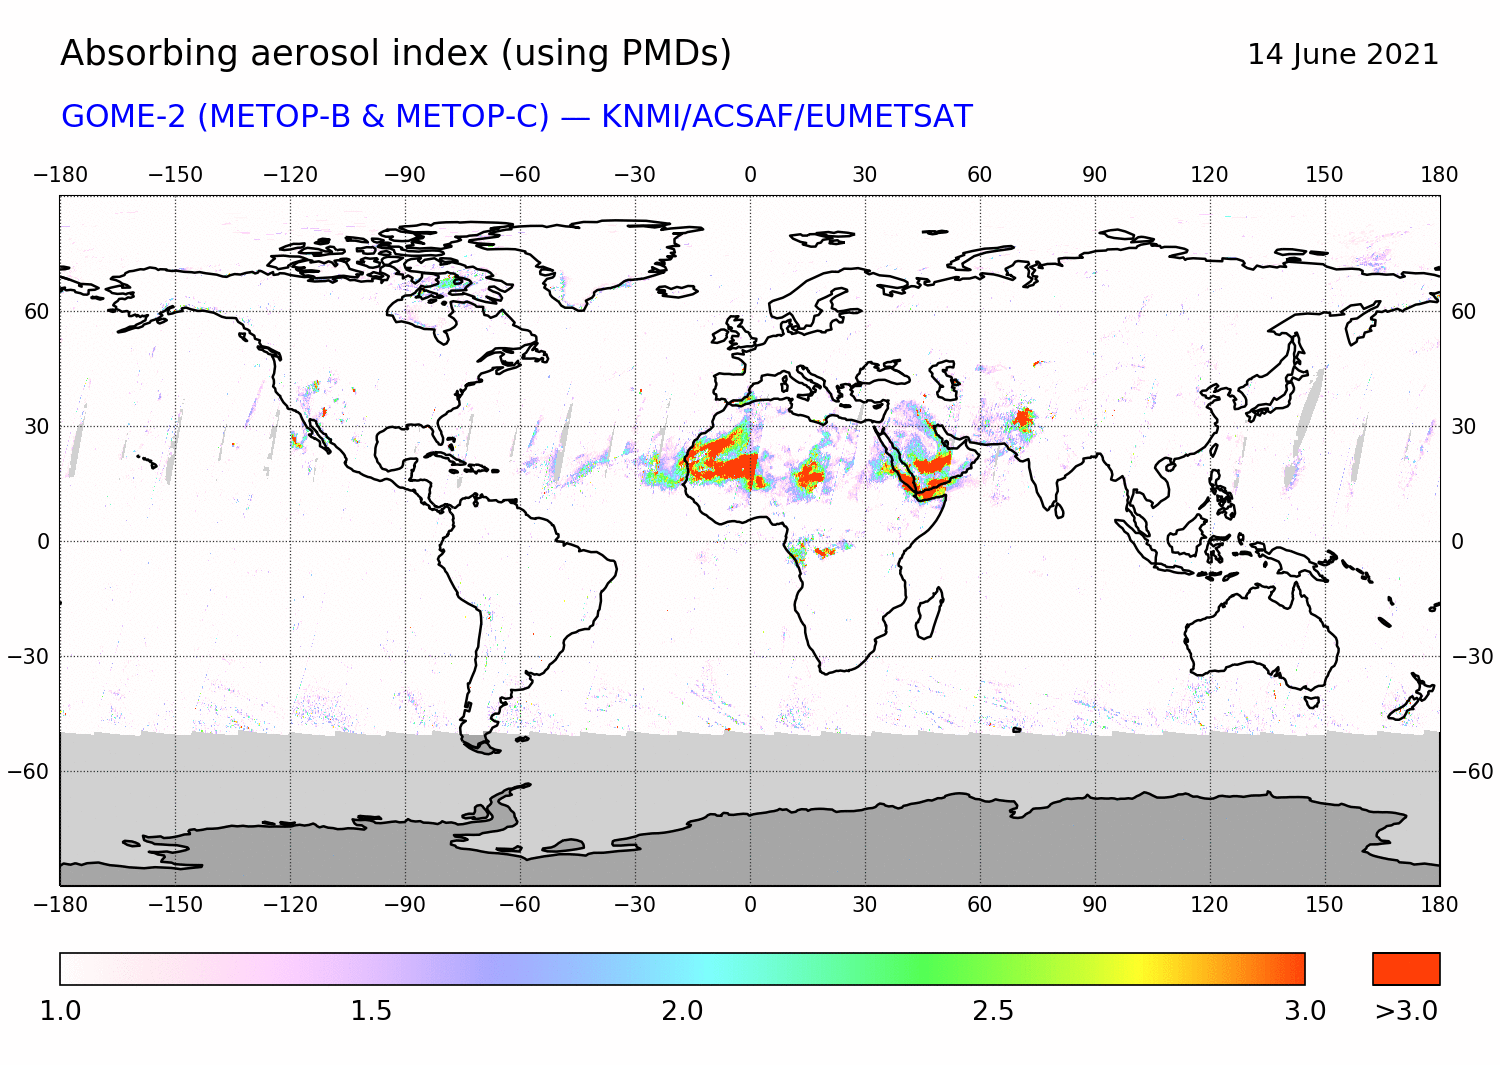 GOME-2 - Absorbing aerosol index of 14 June 2021